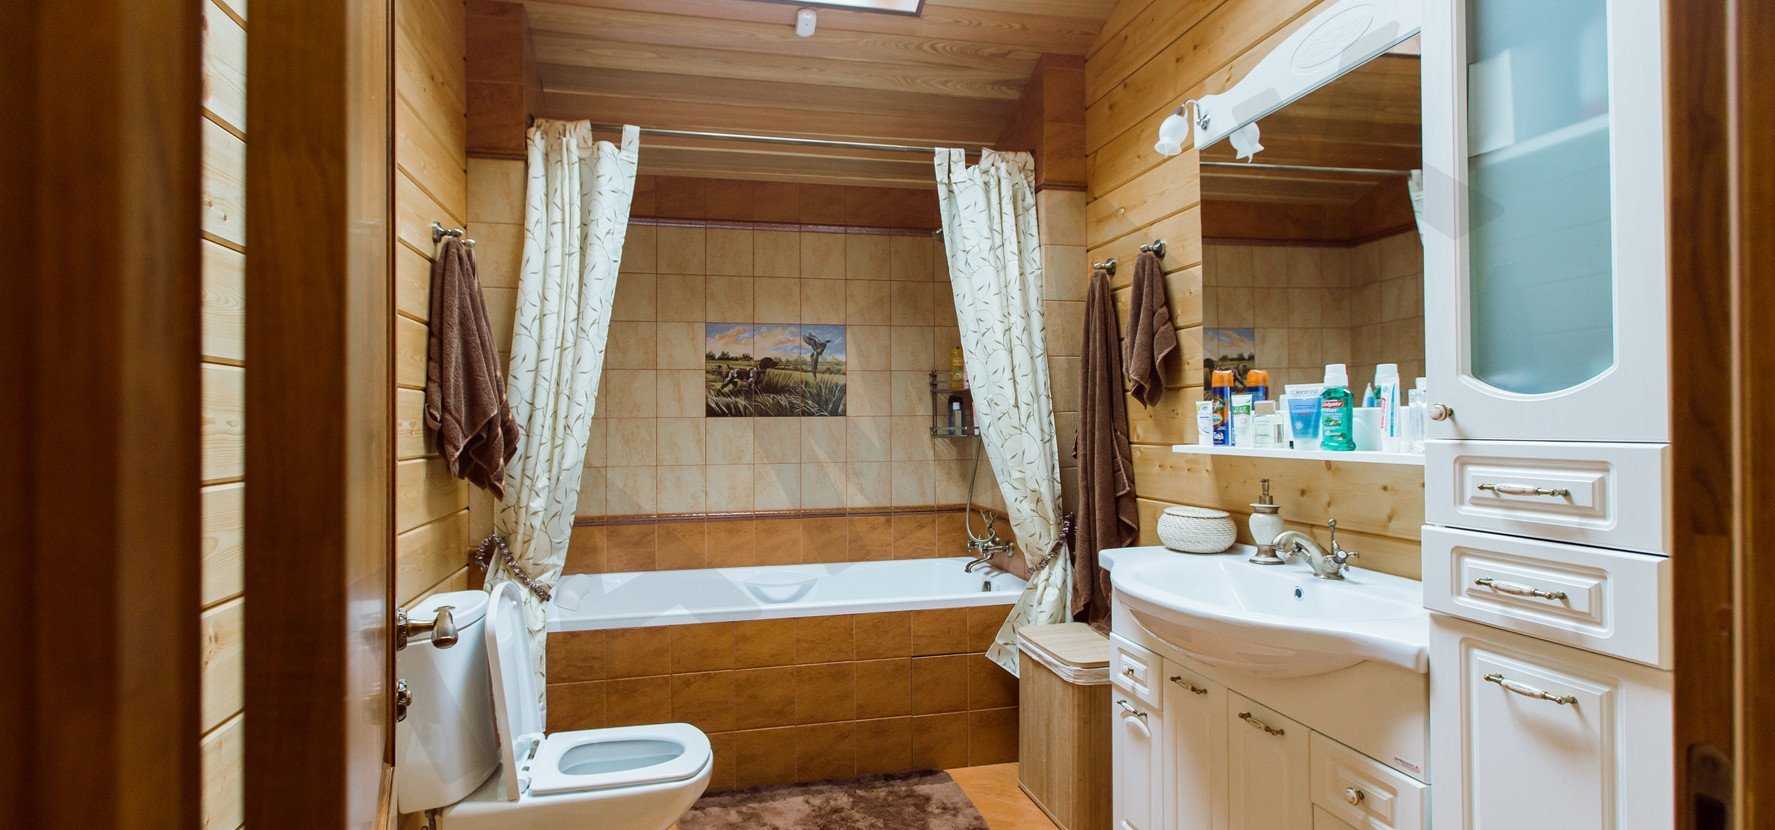 Ванная в деревянном доме — особенности отделочных работ и варианты обработки древесины (125 фото)